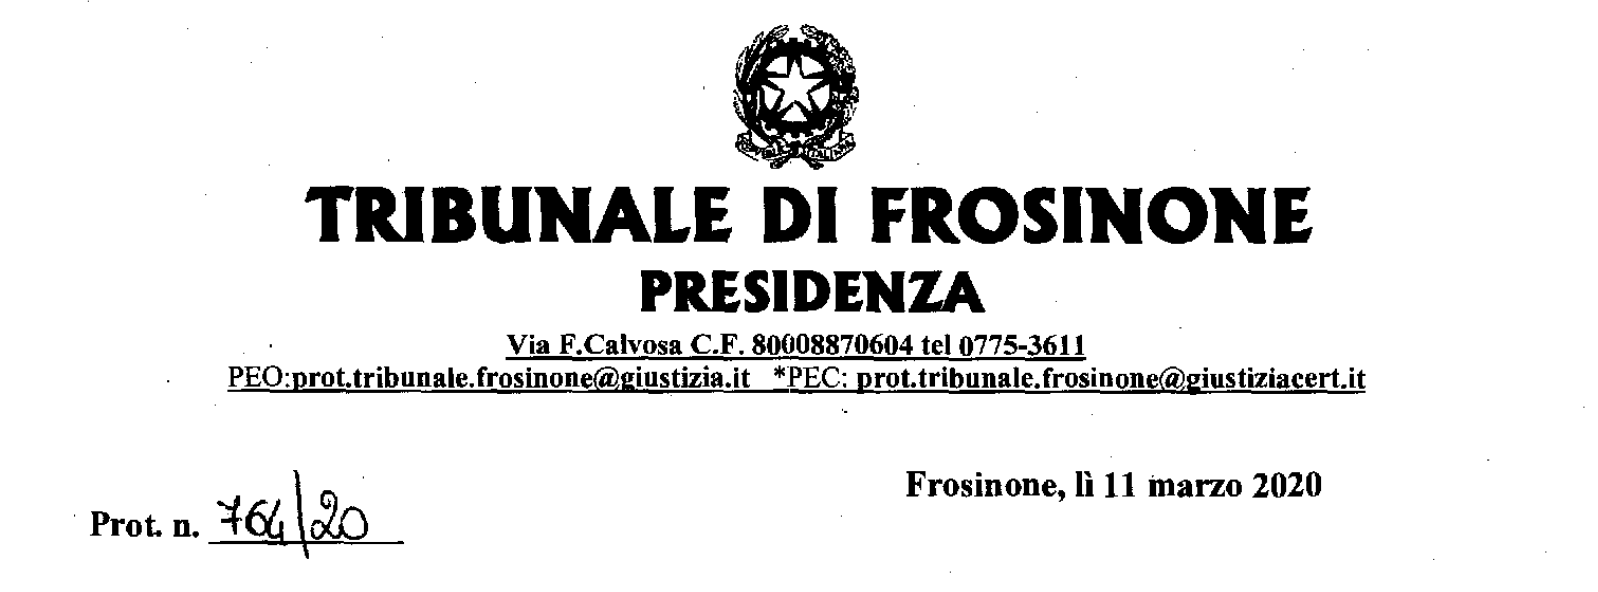 Tribunale di Frosinone: Sospensione dei termini processuali ai sensi dell'art.1, comma2, decreto-legge 8 marzo 2020 n. 11